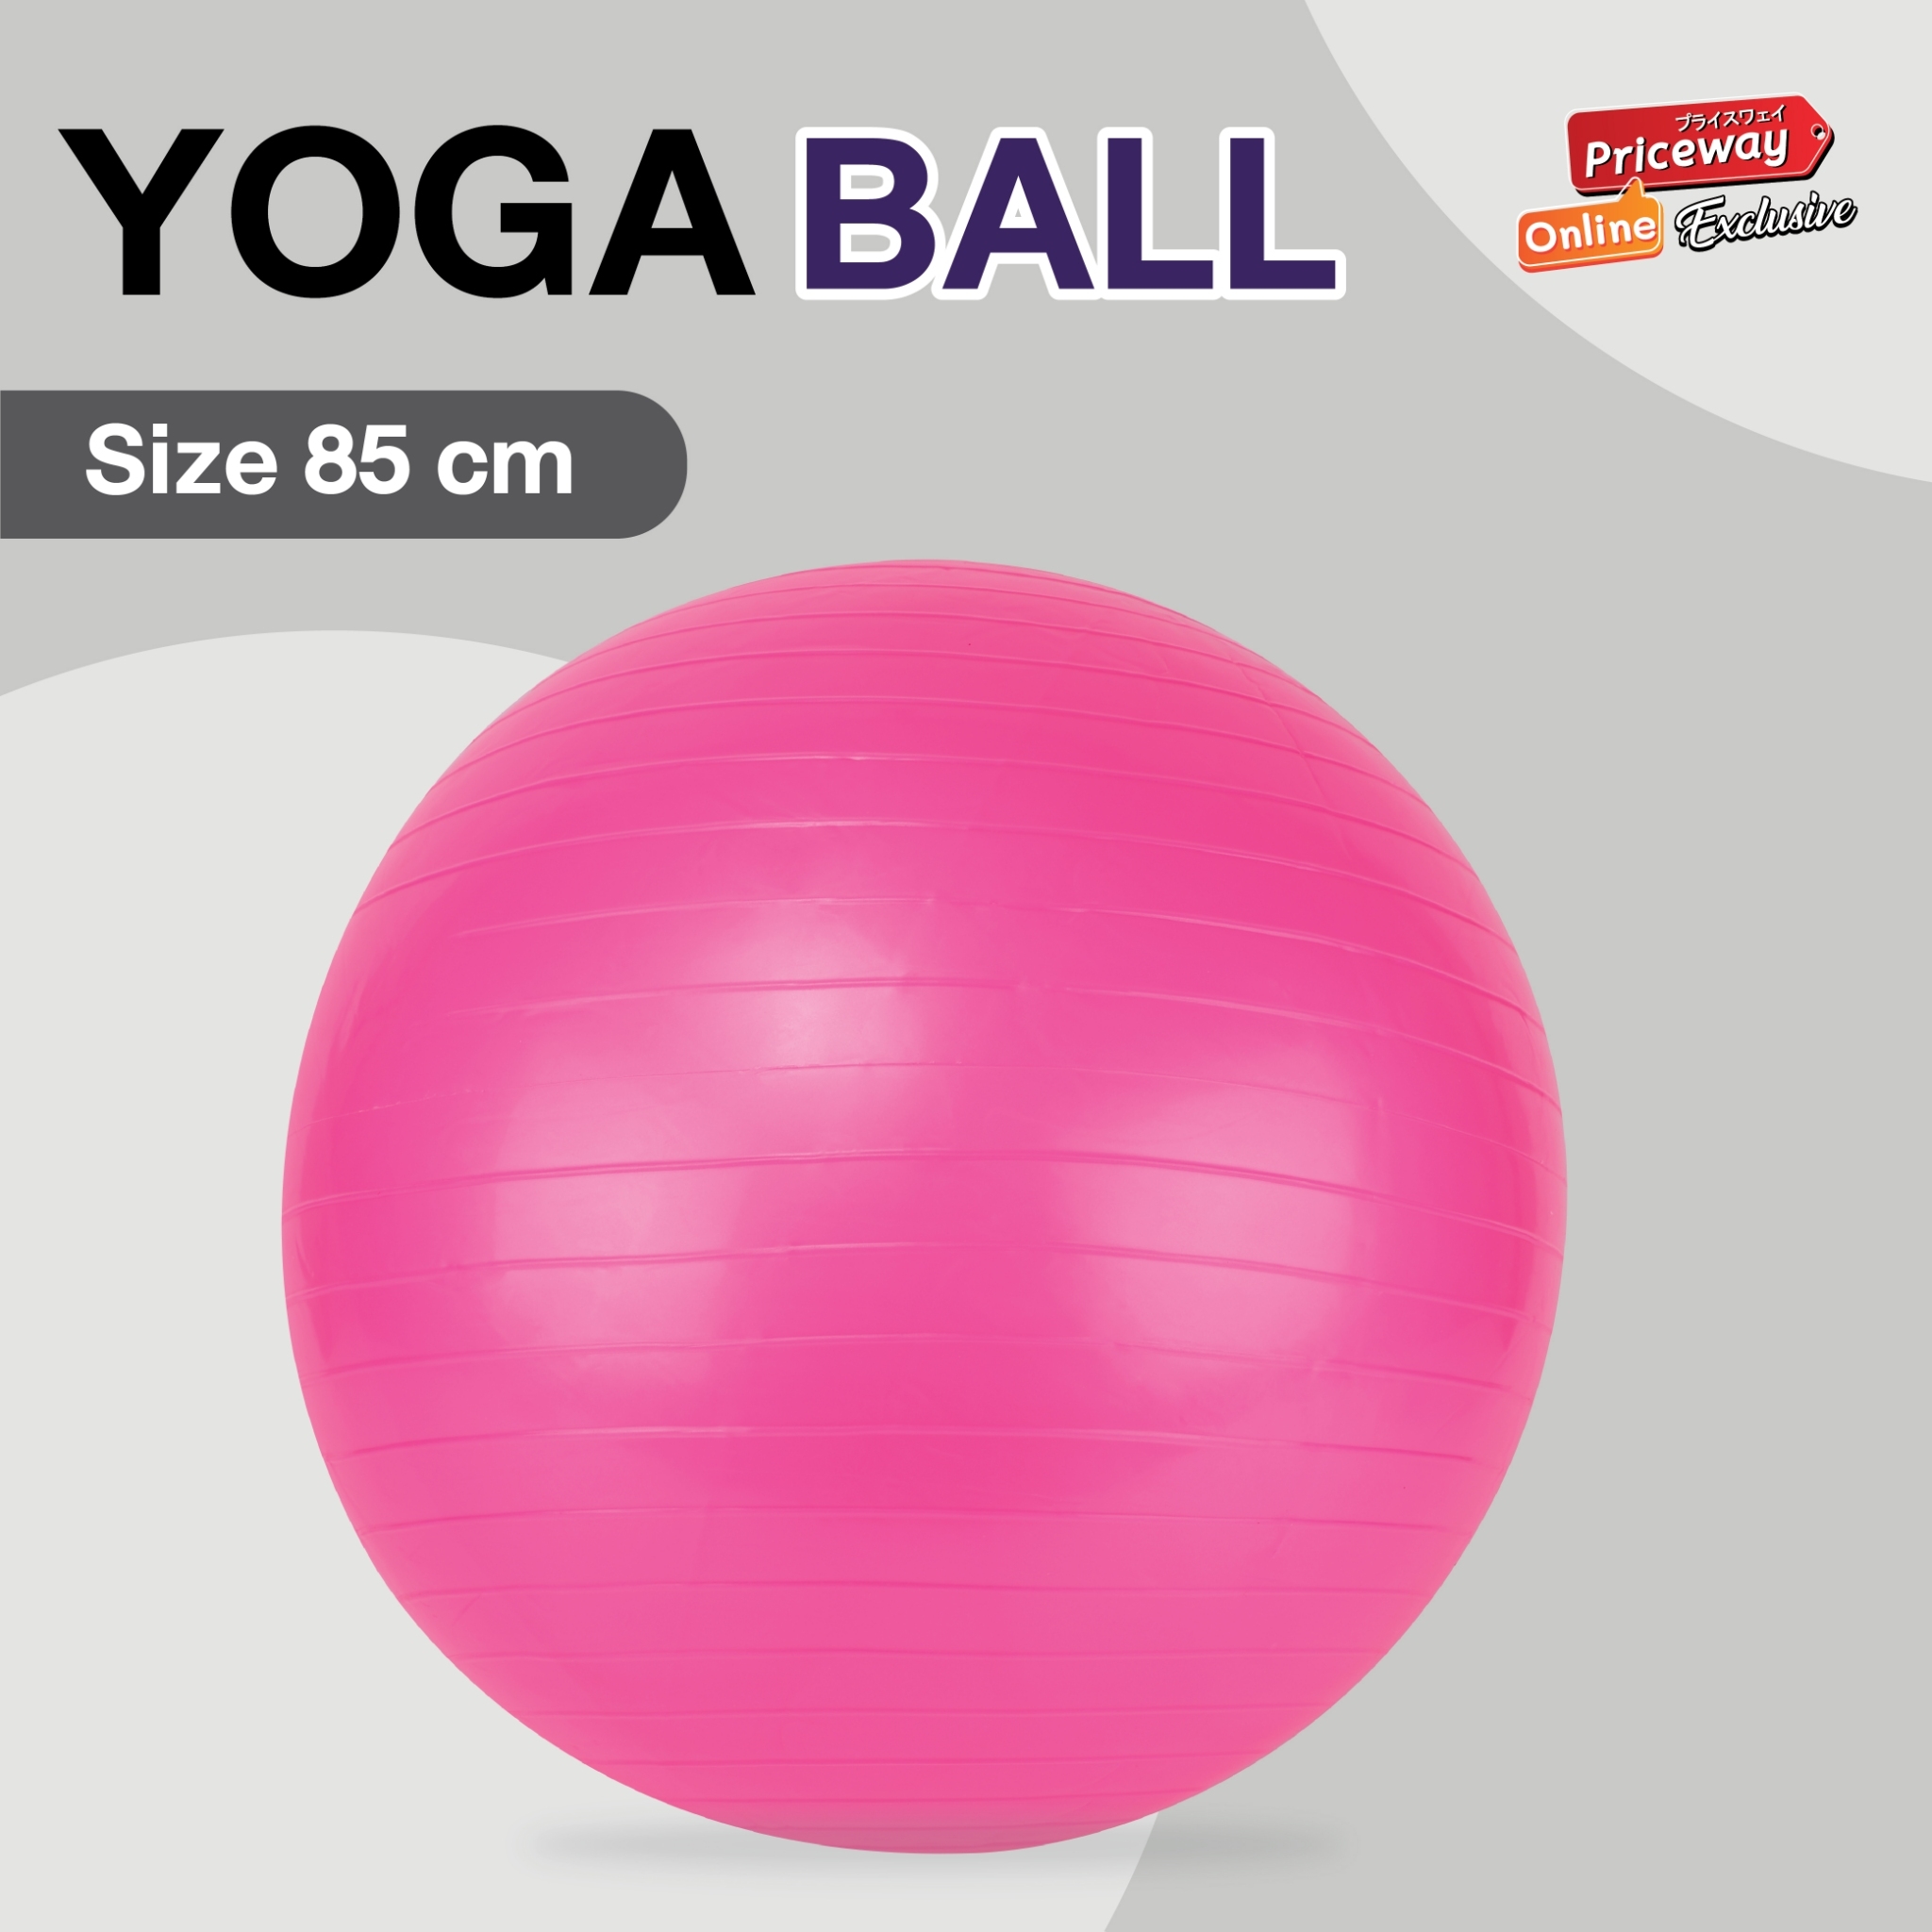 YOGA BALL บอลโยคะ ลูกบอลออกกำลังกาย 85 cm. พร้อมที่ปั๊มลม รุ่น YGB002